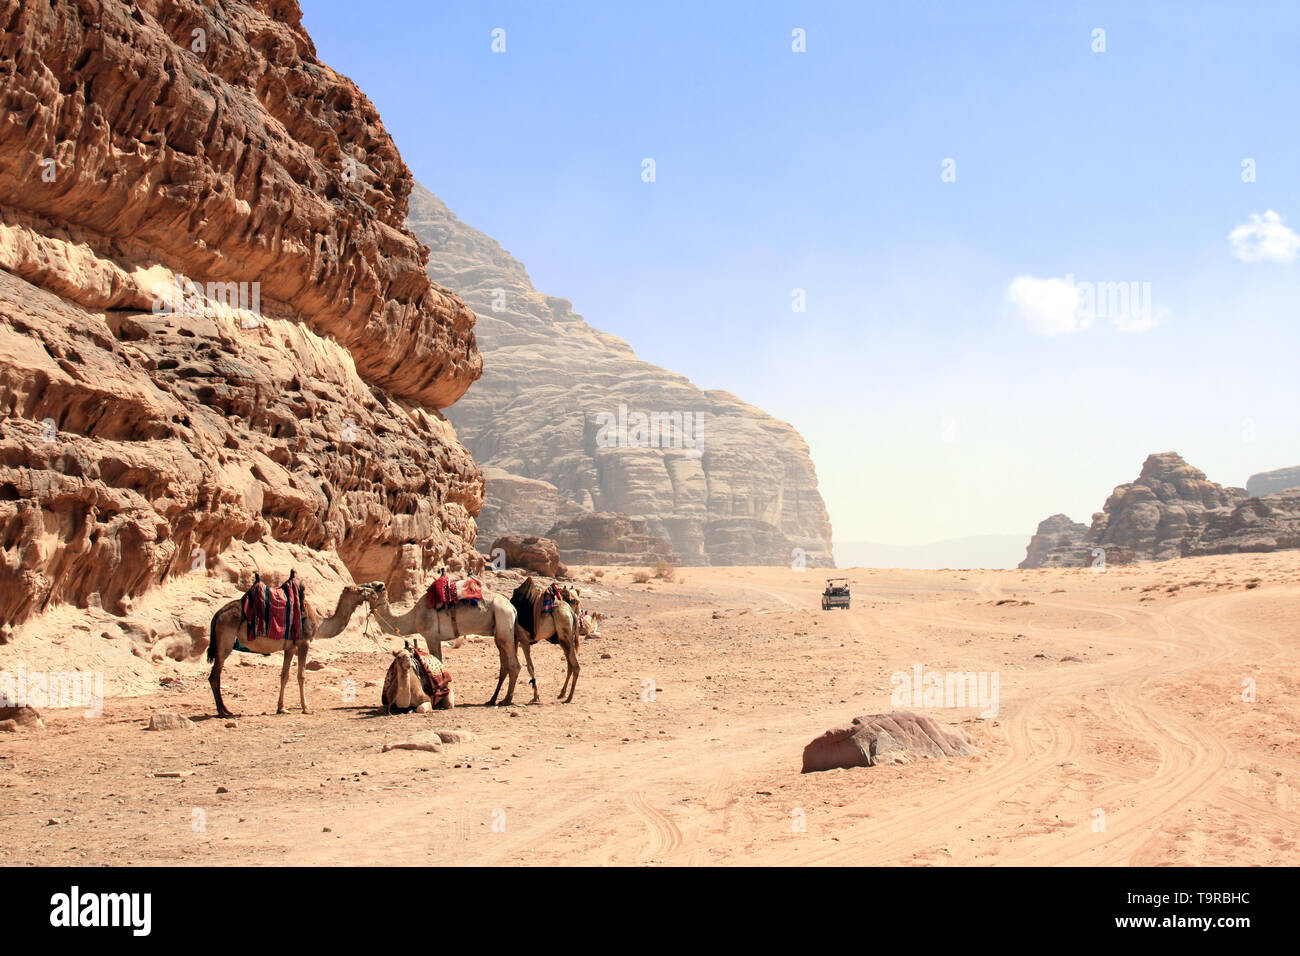 Location de safari dans le désert de Wadi Rum, Jordanie. Les chameaux et les touristes dans la voiture en dehors de la route sur le sable entre les rochers Banque D'Images